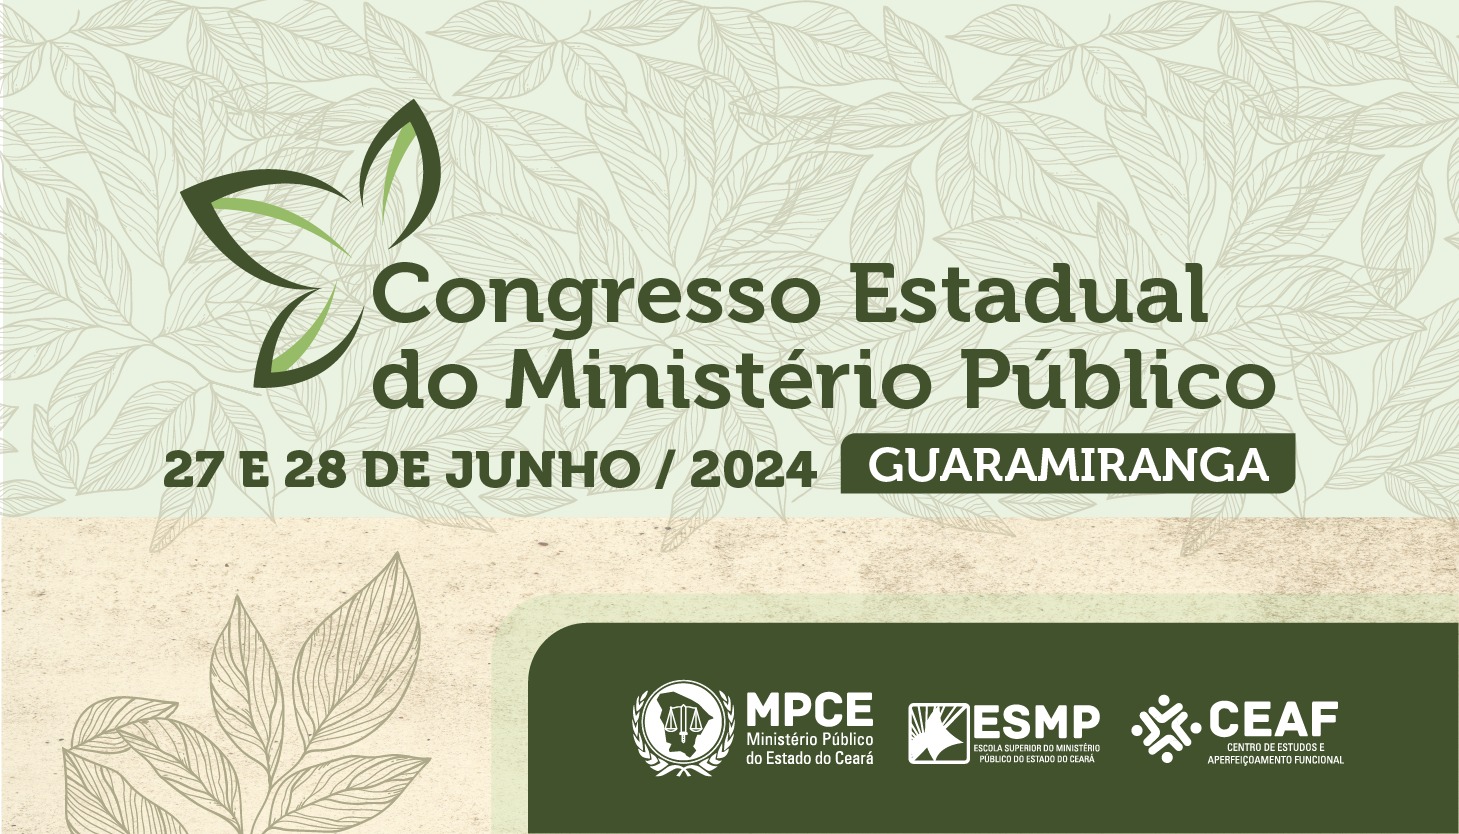 CONGRESSO  ESTADUAL DO MINISTÉRIO PÚBLICO - GUARAMIRANGA/CE